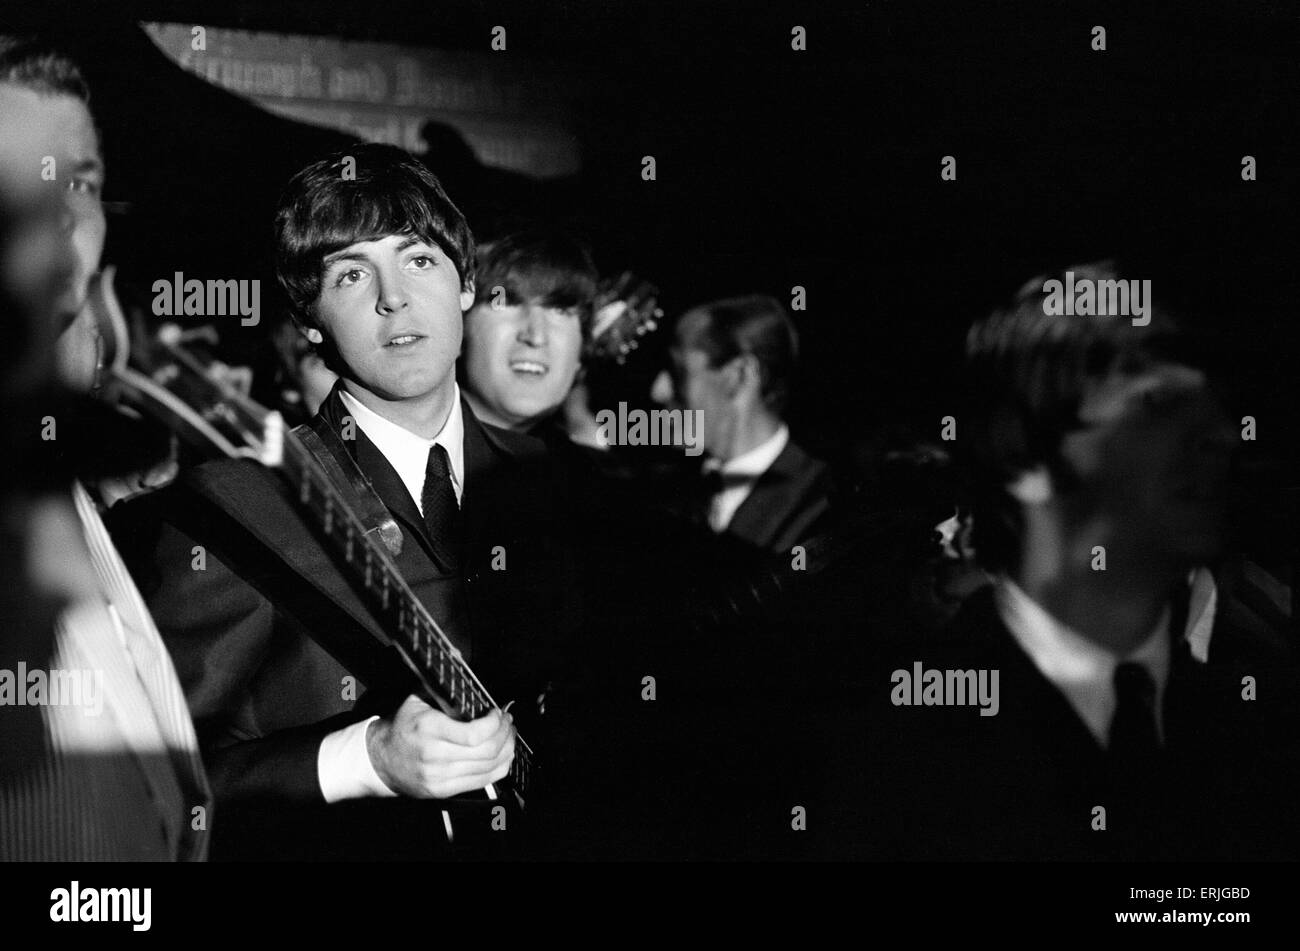 Les Beatles 1964 tournée américaine Indianapolis, Indiana State Fair Coliseum. 3 Septembre 1964 Banque D'Images